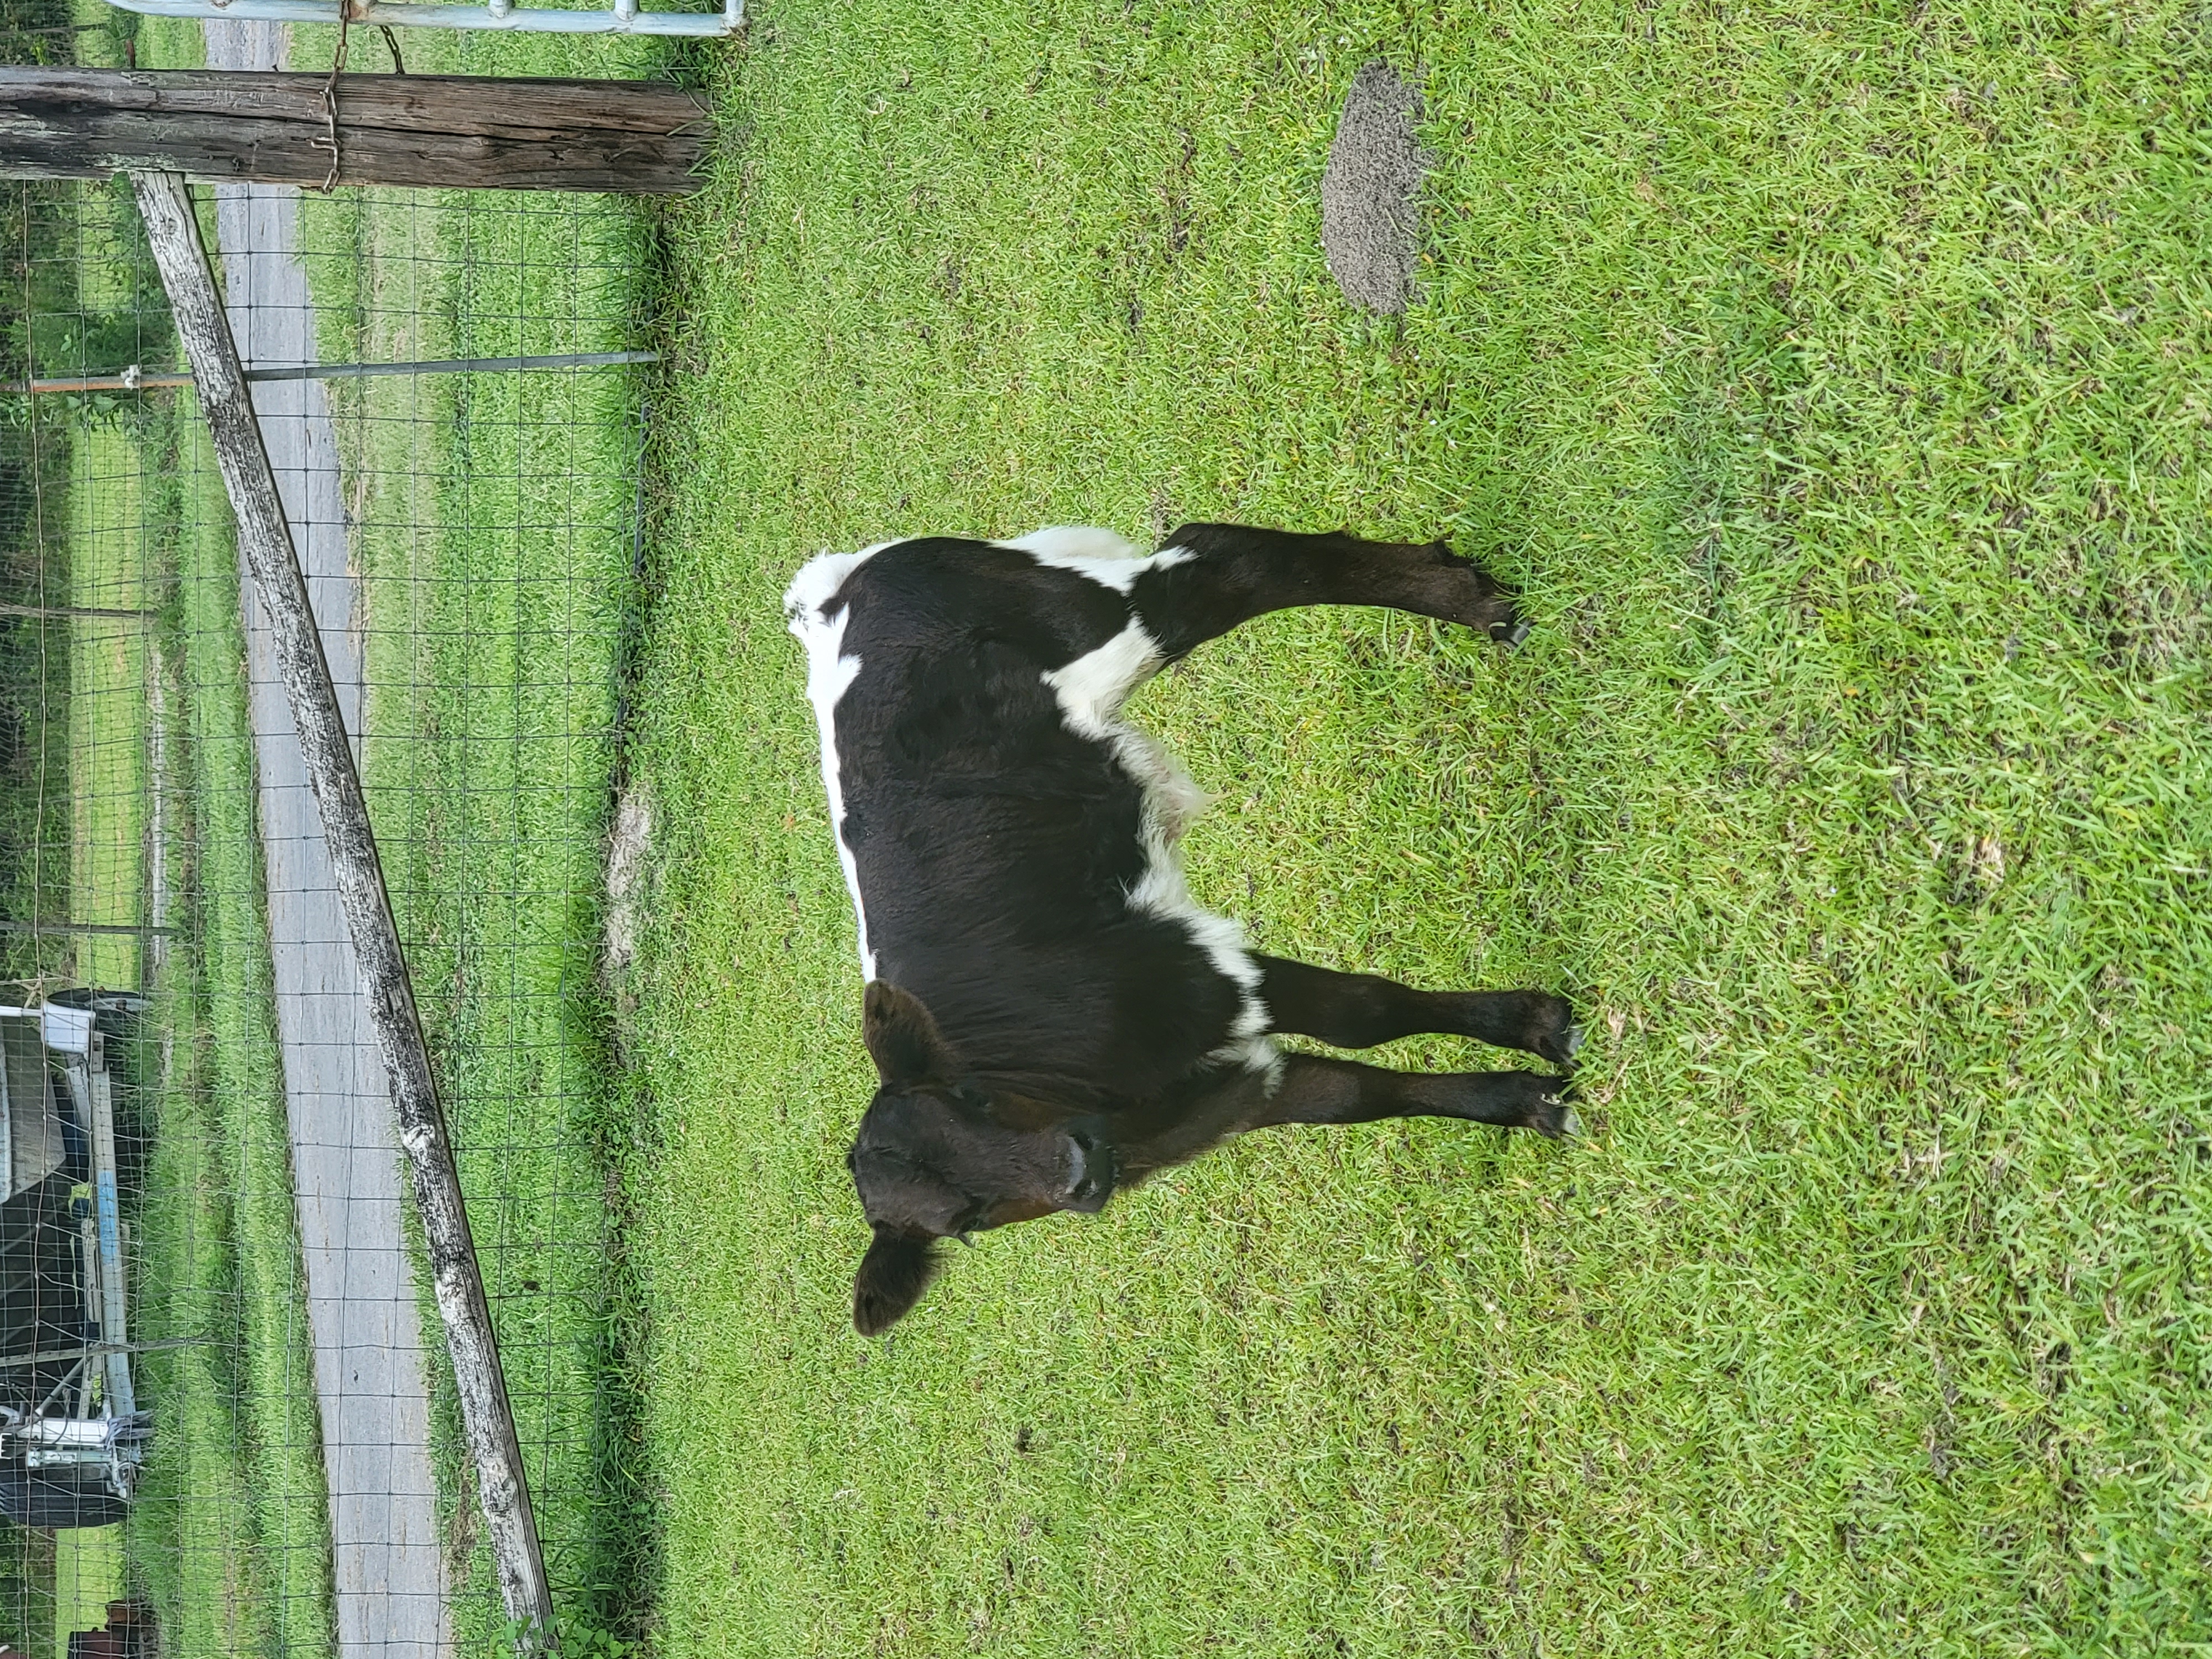 Mini bull calf